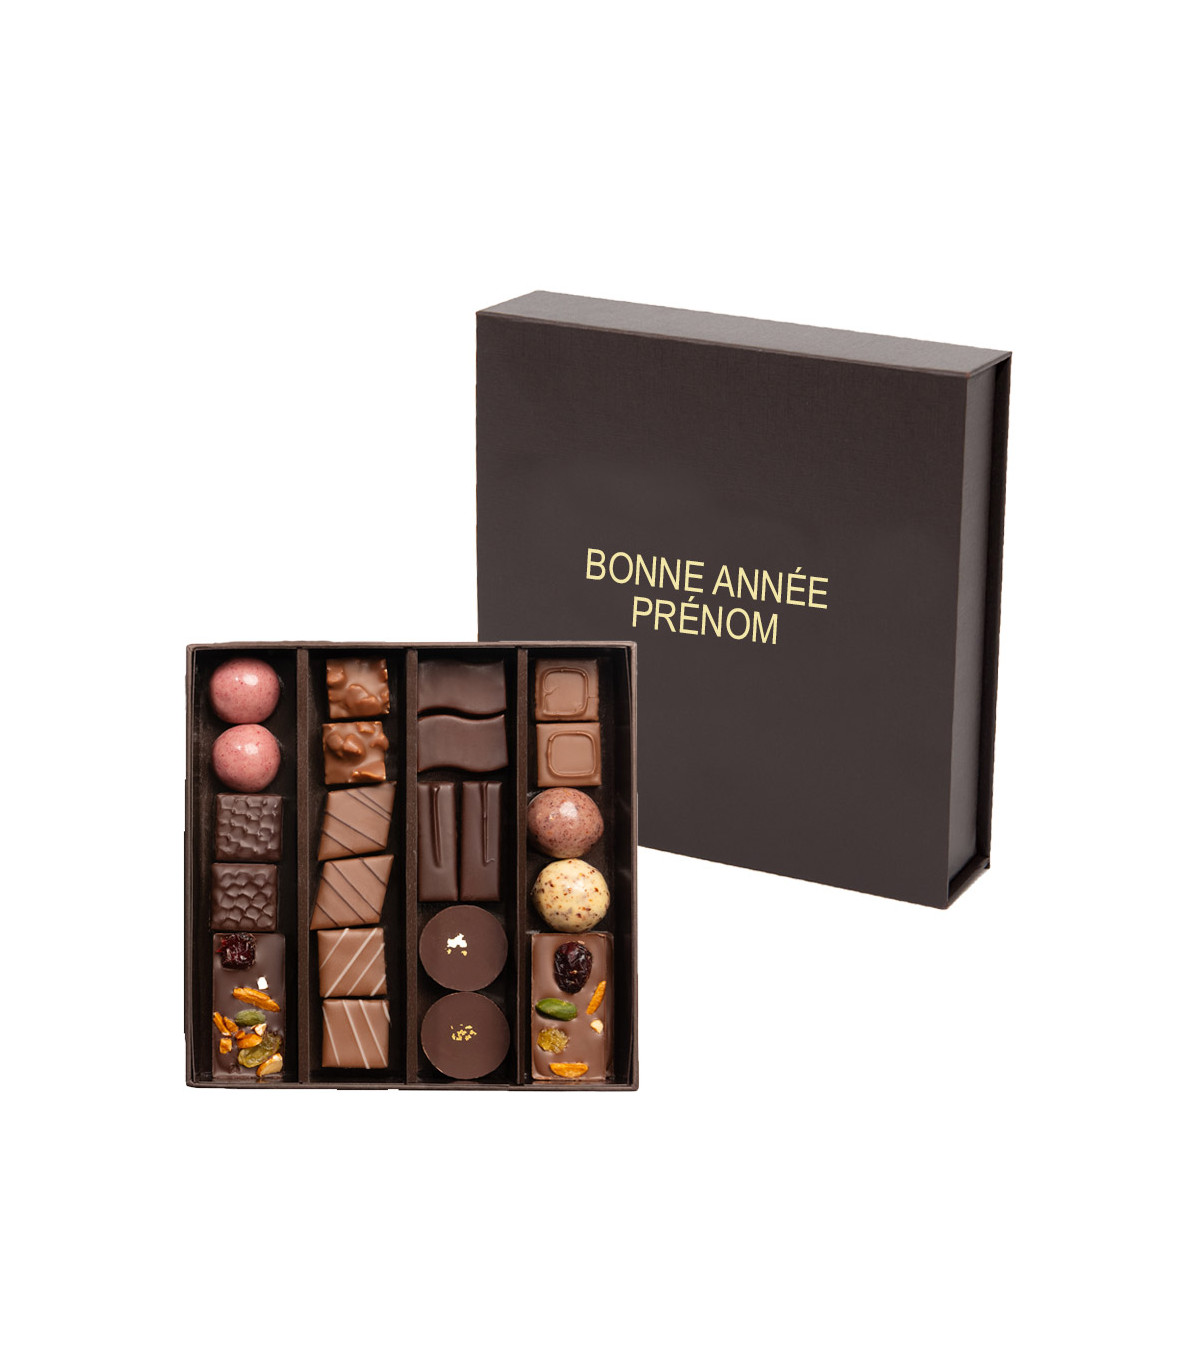 Chocolat de noël personnalisé - Cadeau de noël D'lys couleurs